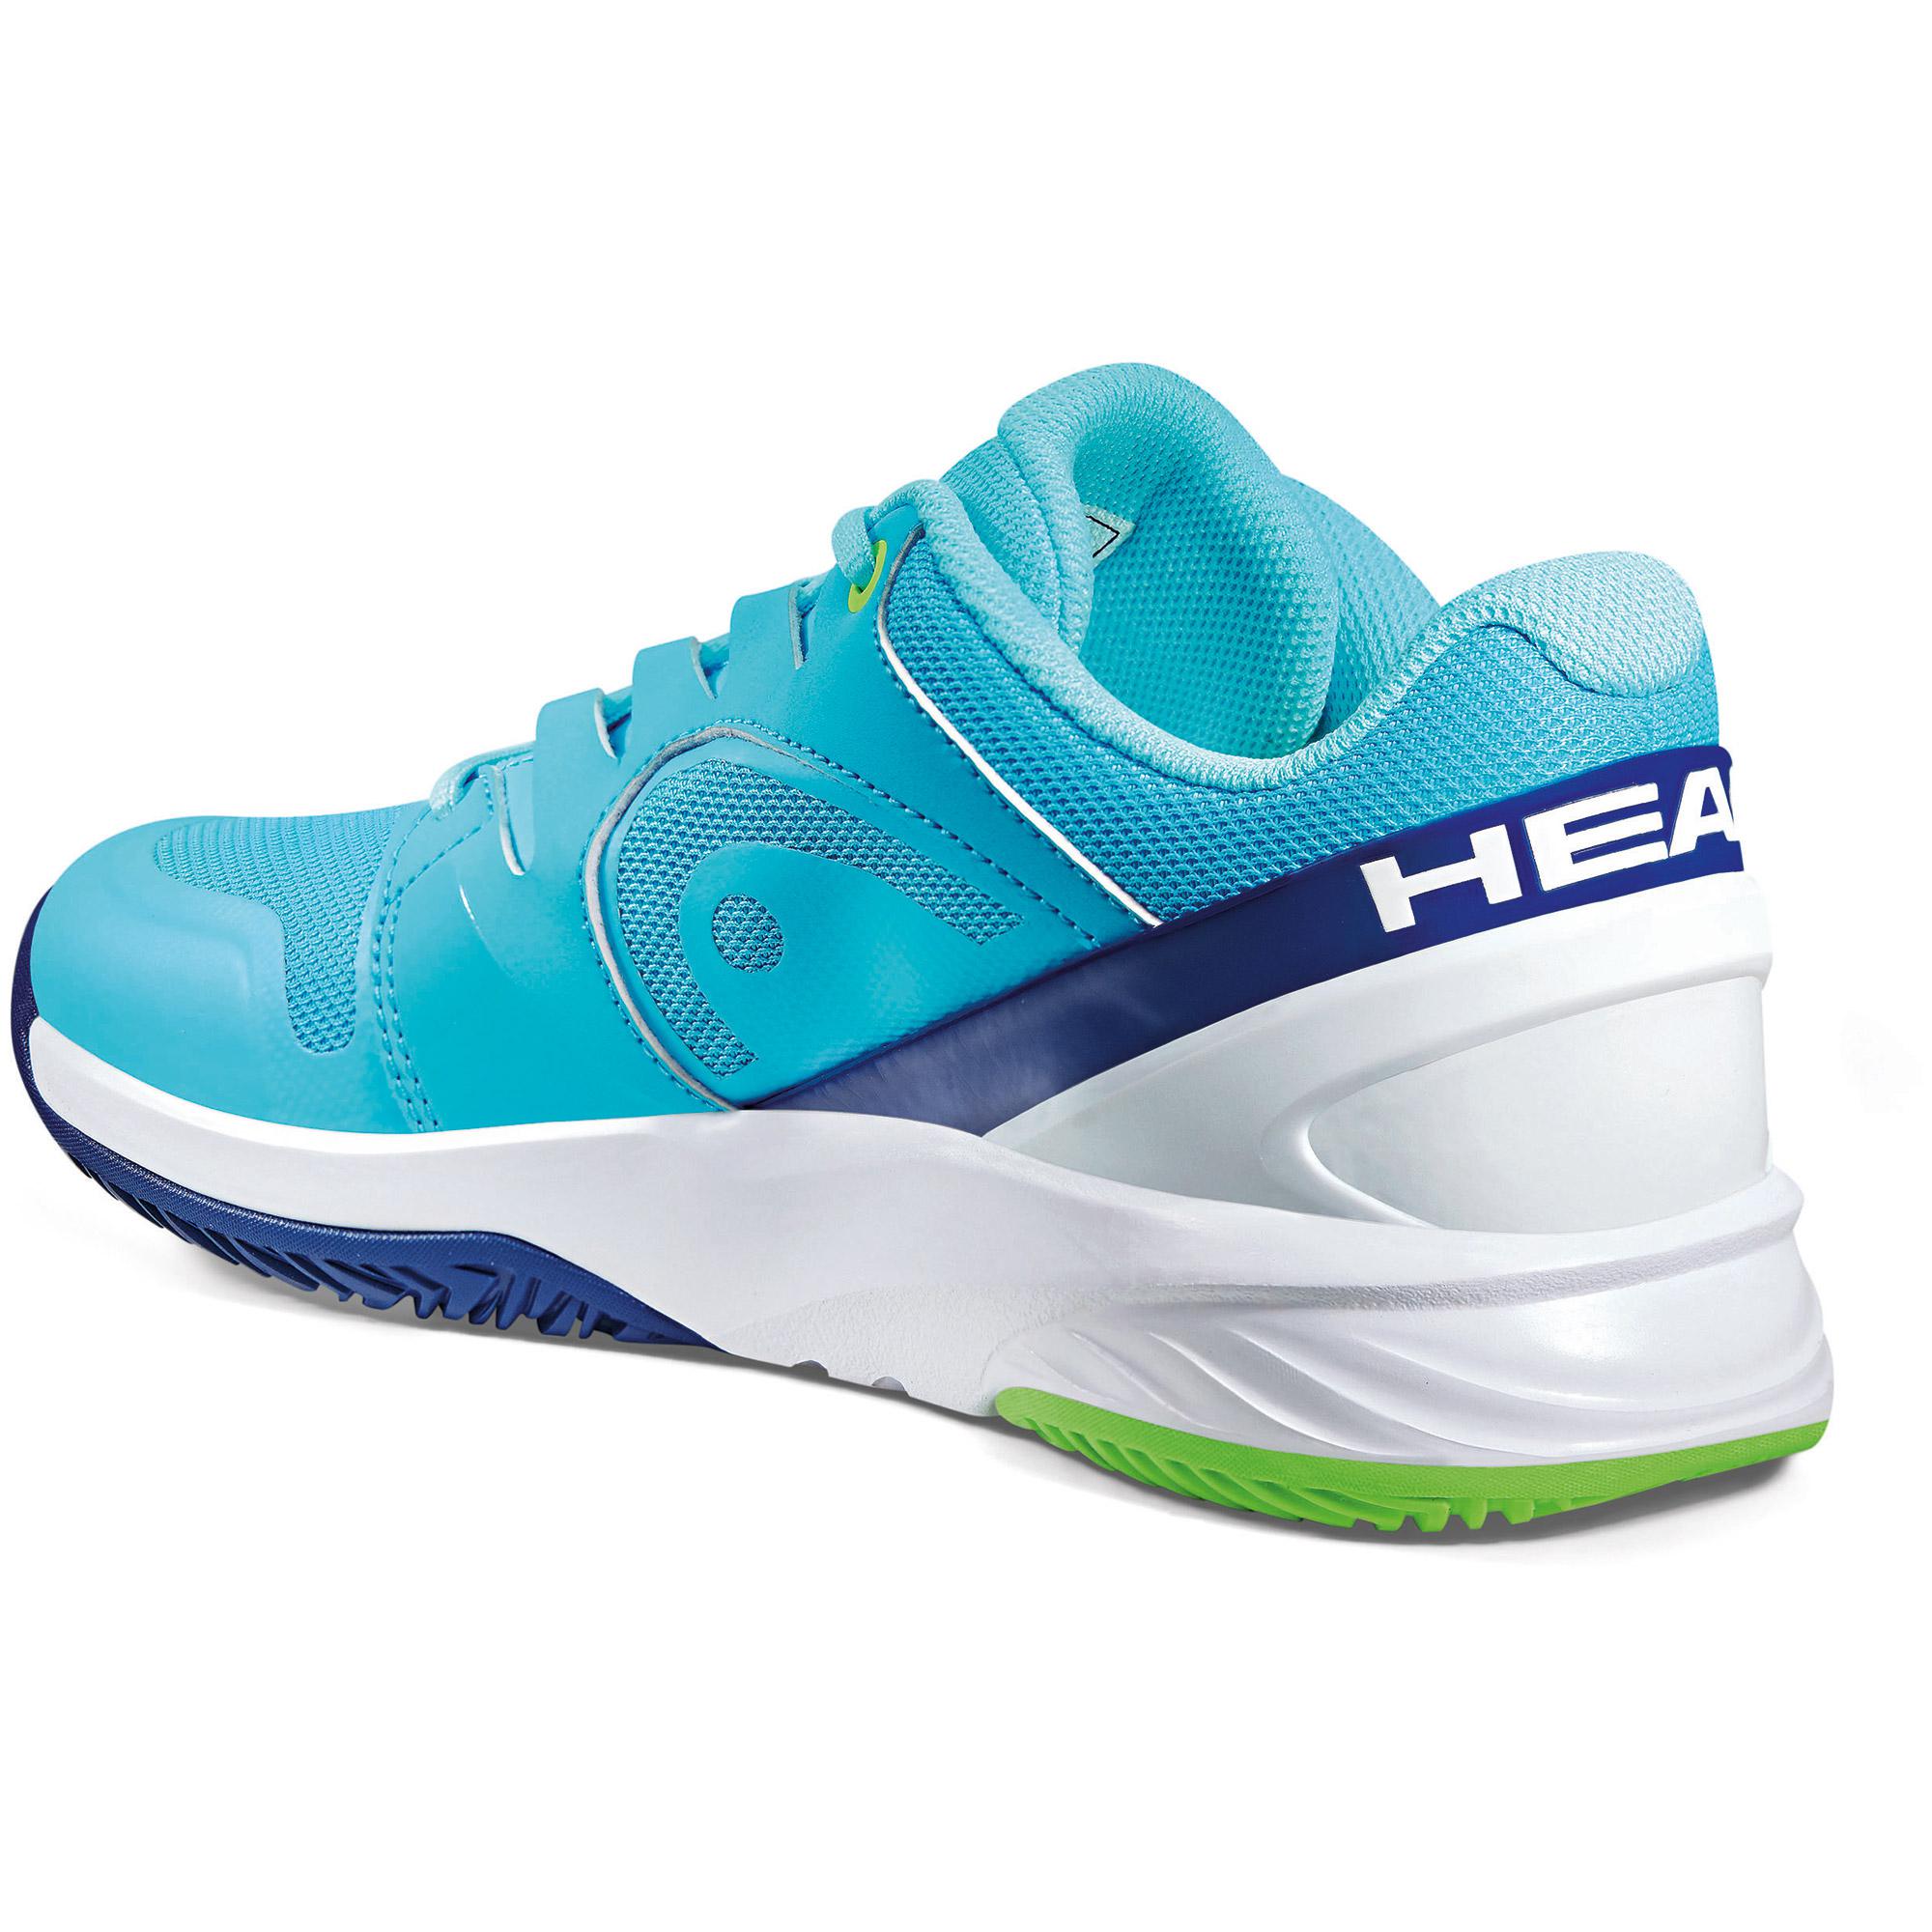 37 Top Pictures Womens Hoka Tennis Shoes On Sale - Hoka EVO Mafate ...